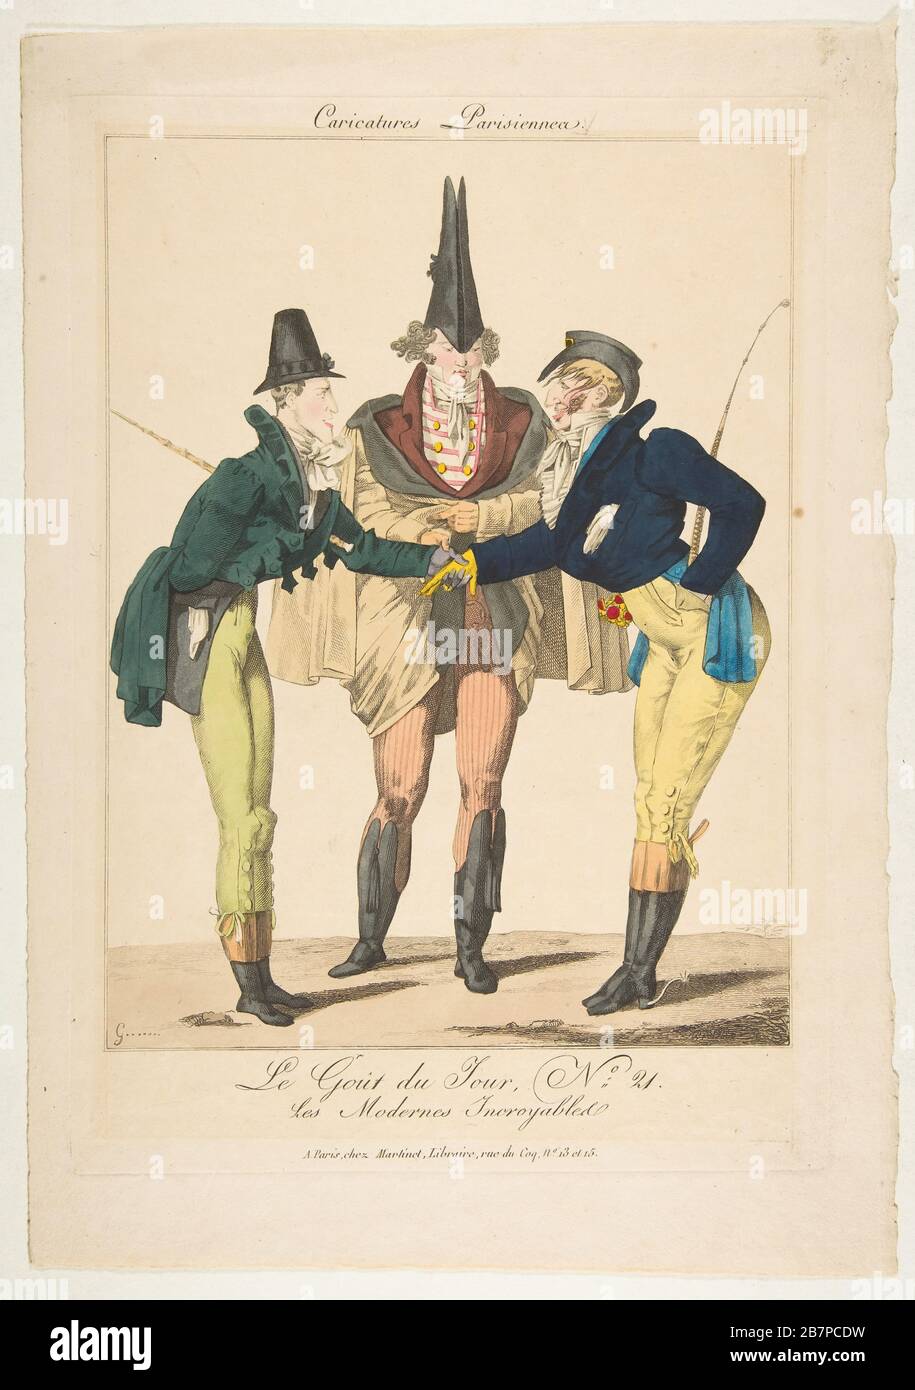 Le go&#xfb;t du Jour, Nr. 21: Les modernes Incroyables, aus Karikaturen Parisiennes, ca. 1815. Stockfoto